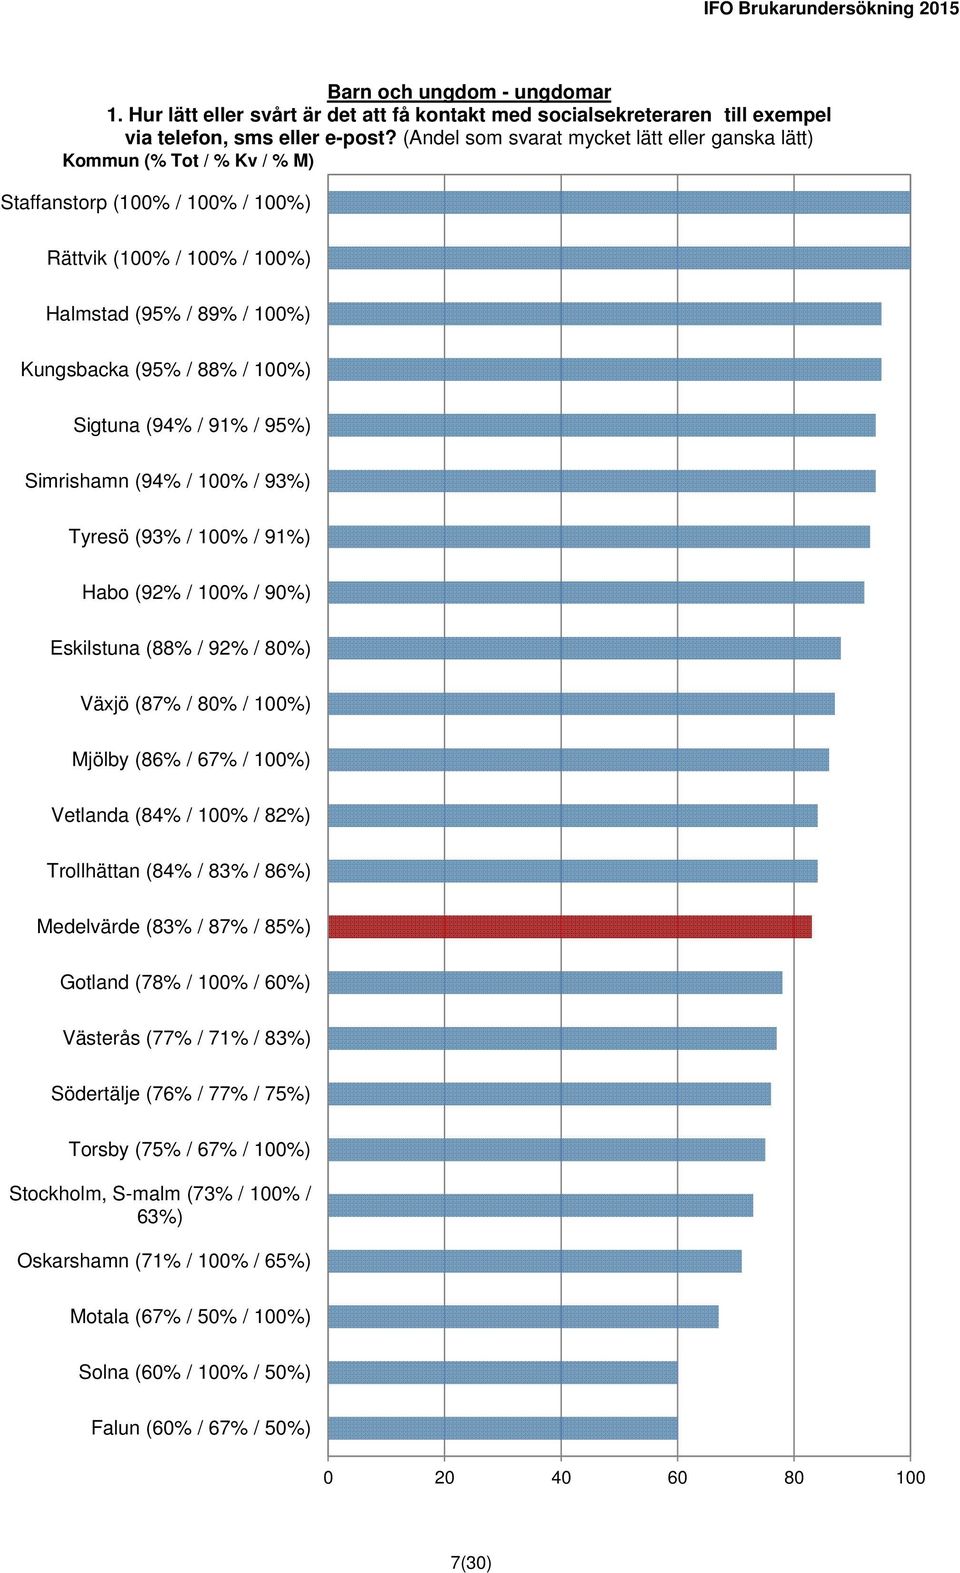 Simrishamn (94% / 100% / 93%) Tyresö (93% / 100% / 91%) Habo (92% / 100% / 90%) Eskilstuna (88% / 92% / 80%) Växjö (87% / 80% / 100%) Mjölby (86% / 67% / 100%) Vetlanda (84% / 100% / 82%) Trollhättan